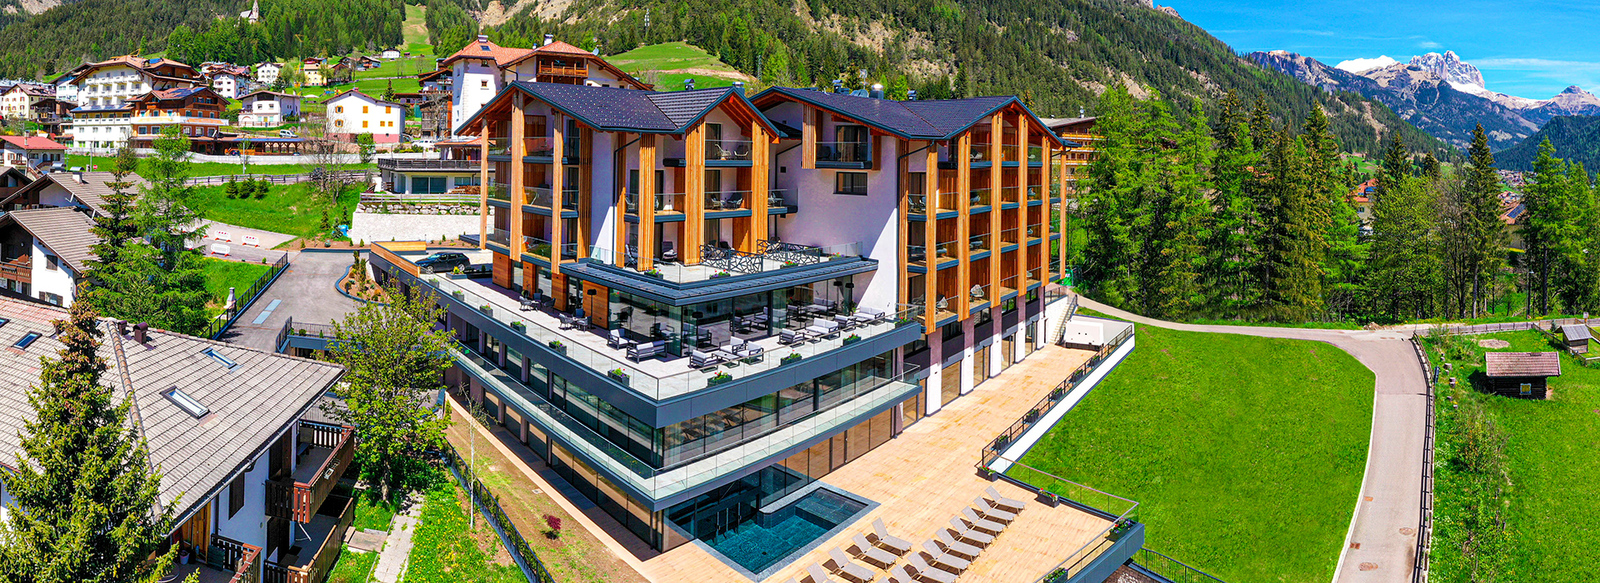 Top Hotel in Val di Fassa